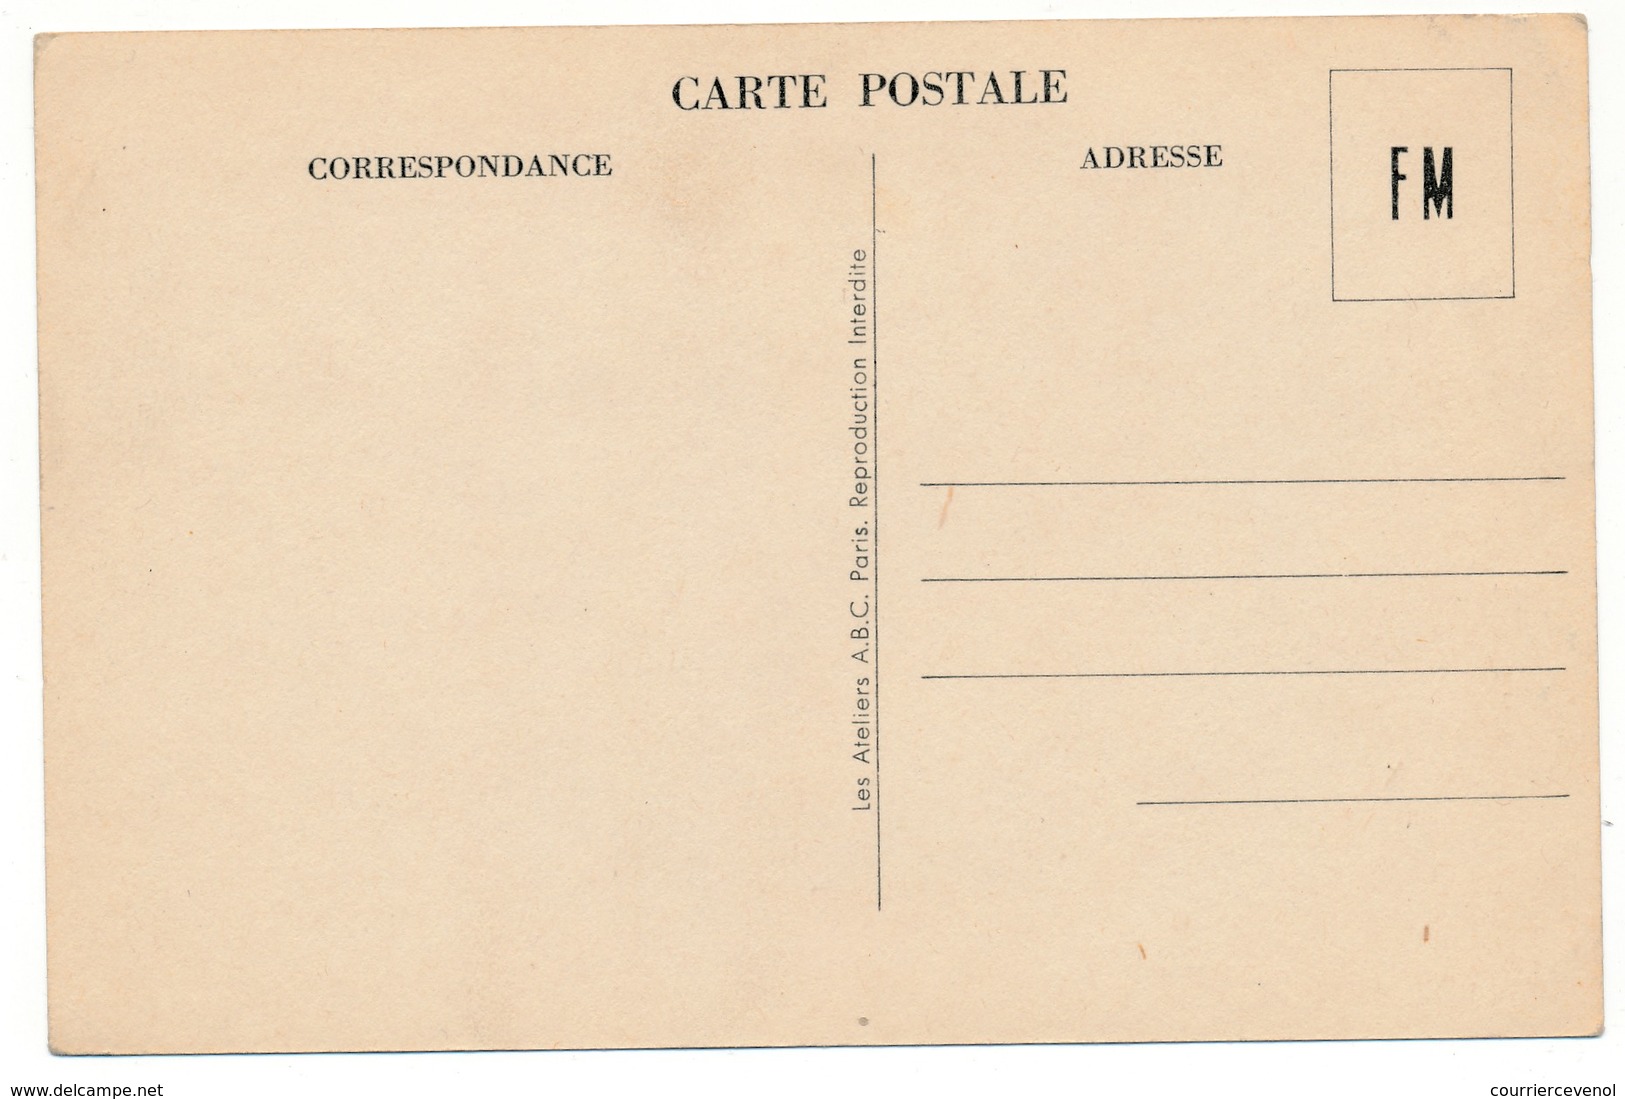 Carte De Franchise Militaire - Pages De Gloire (Aspirines Du Rhône) ...2eme Régiment Du Génie ... 3 Lignes - Neuve - Covers & Documents